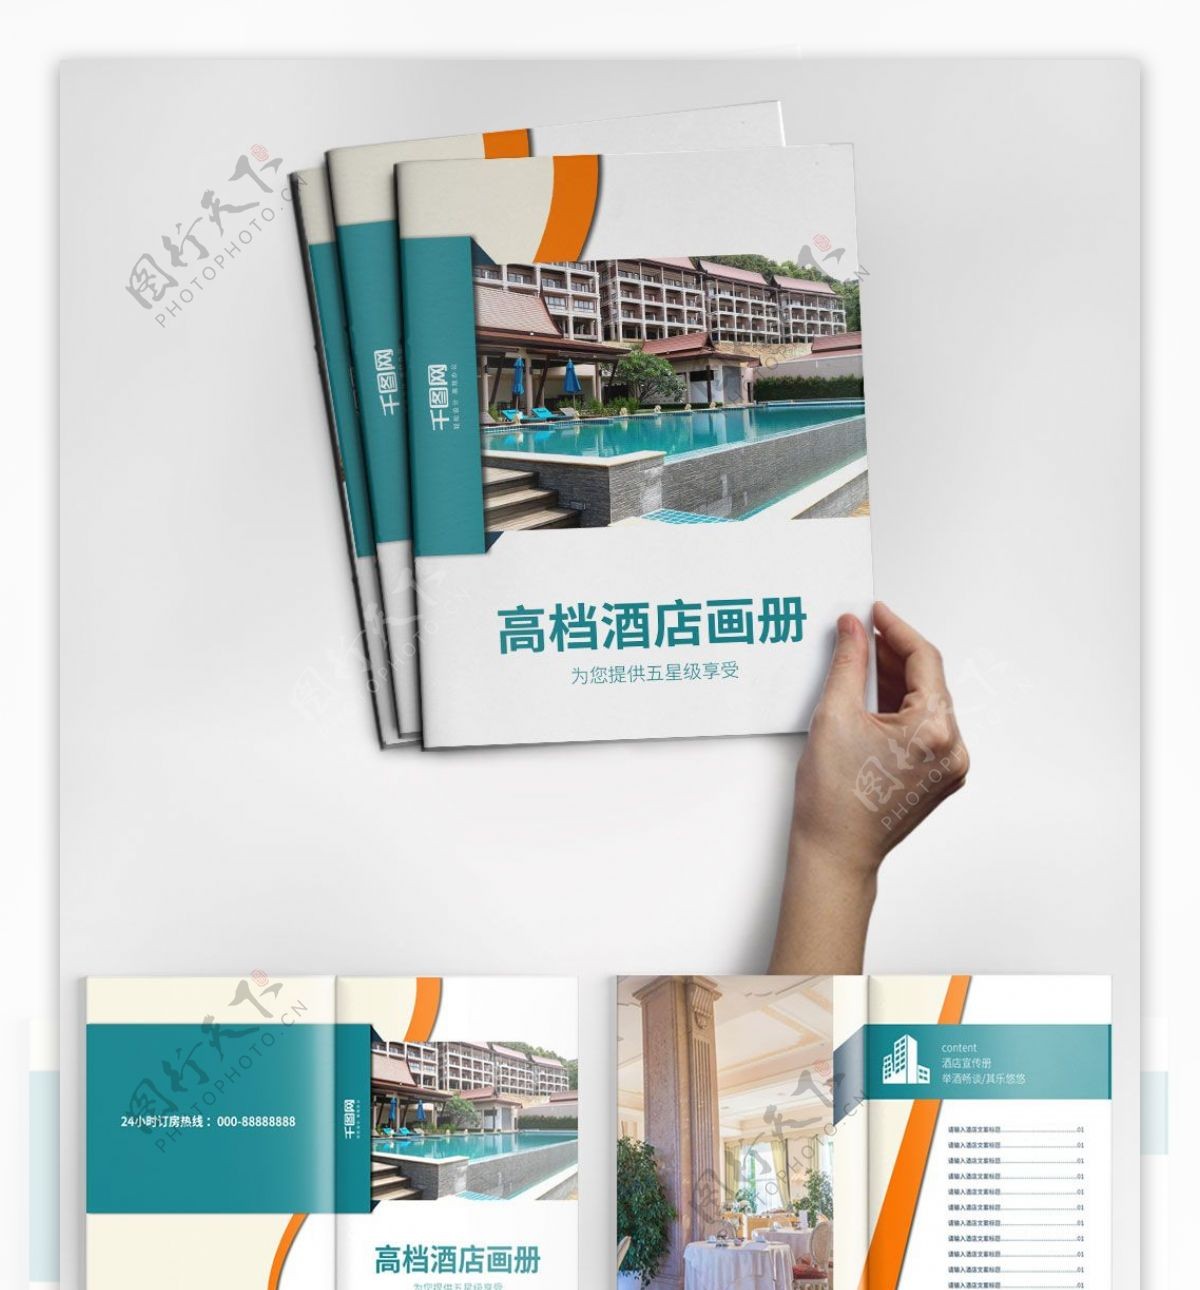 创意时尚酒店画册设计PSD模板